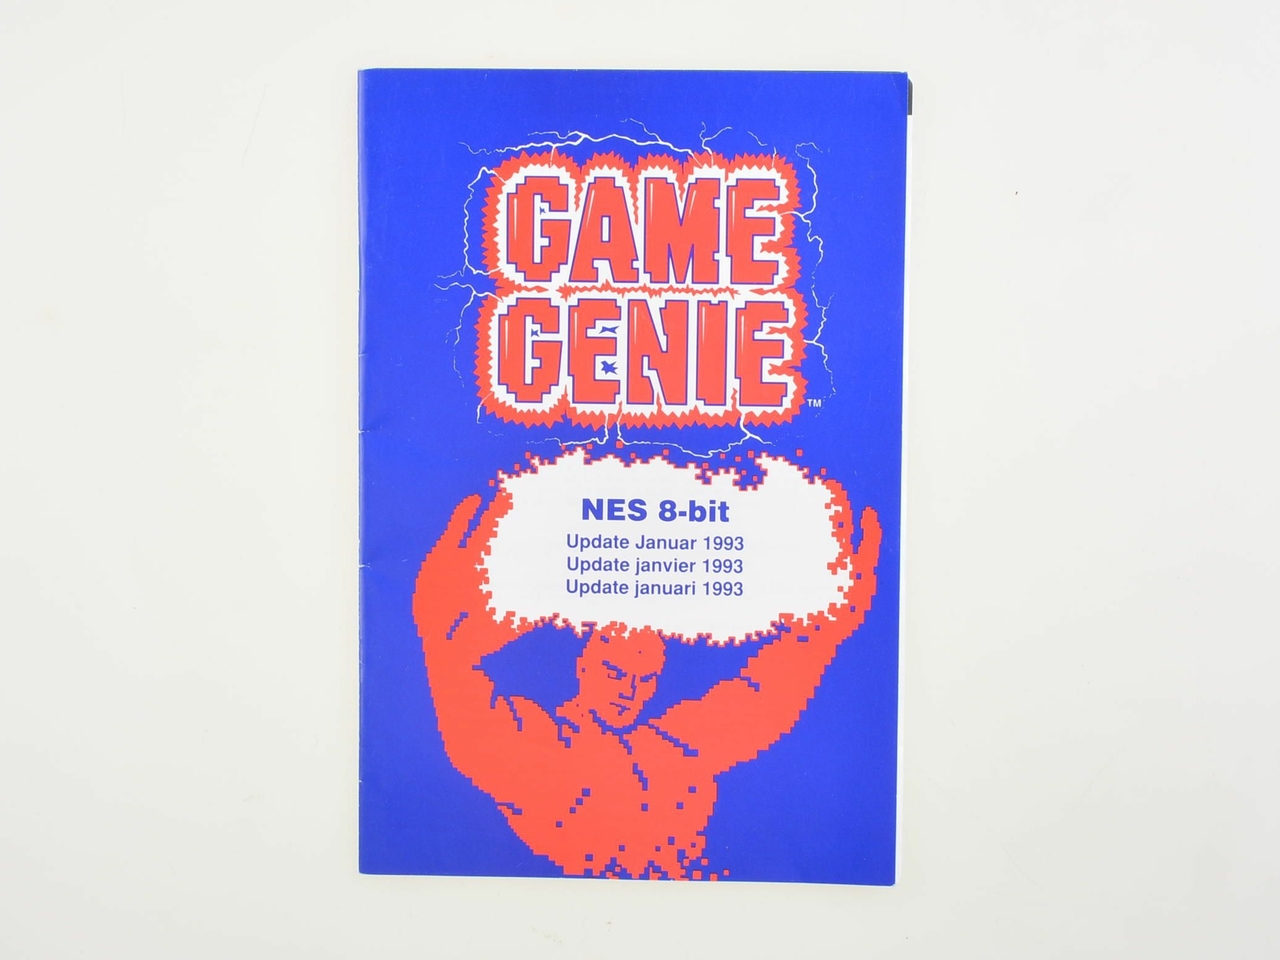 Game Genie - Update Januari 1993 - Manual - Nintendo NES Manuals